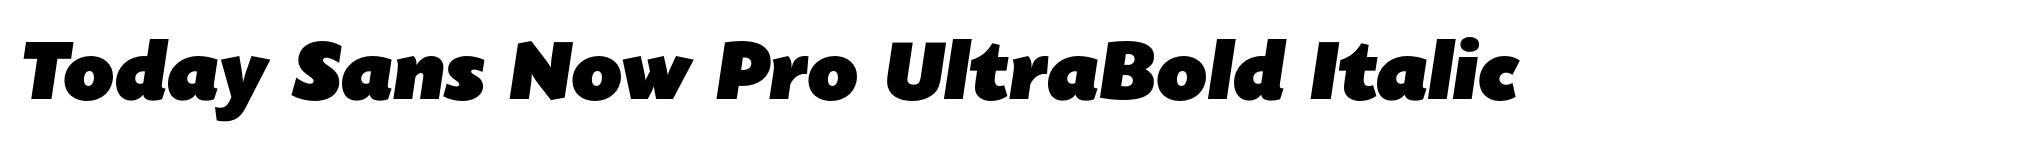 Today Sans Now Pro UltraBold Italic image